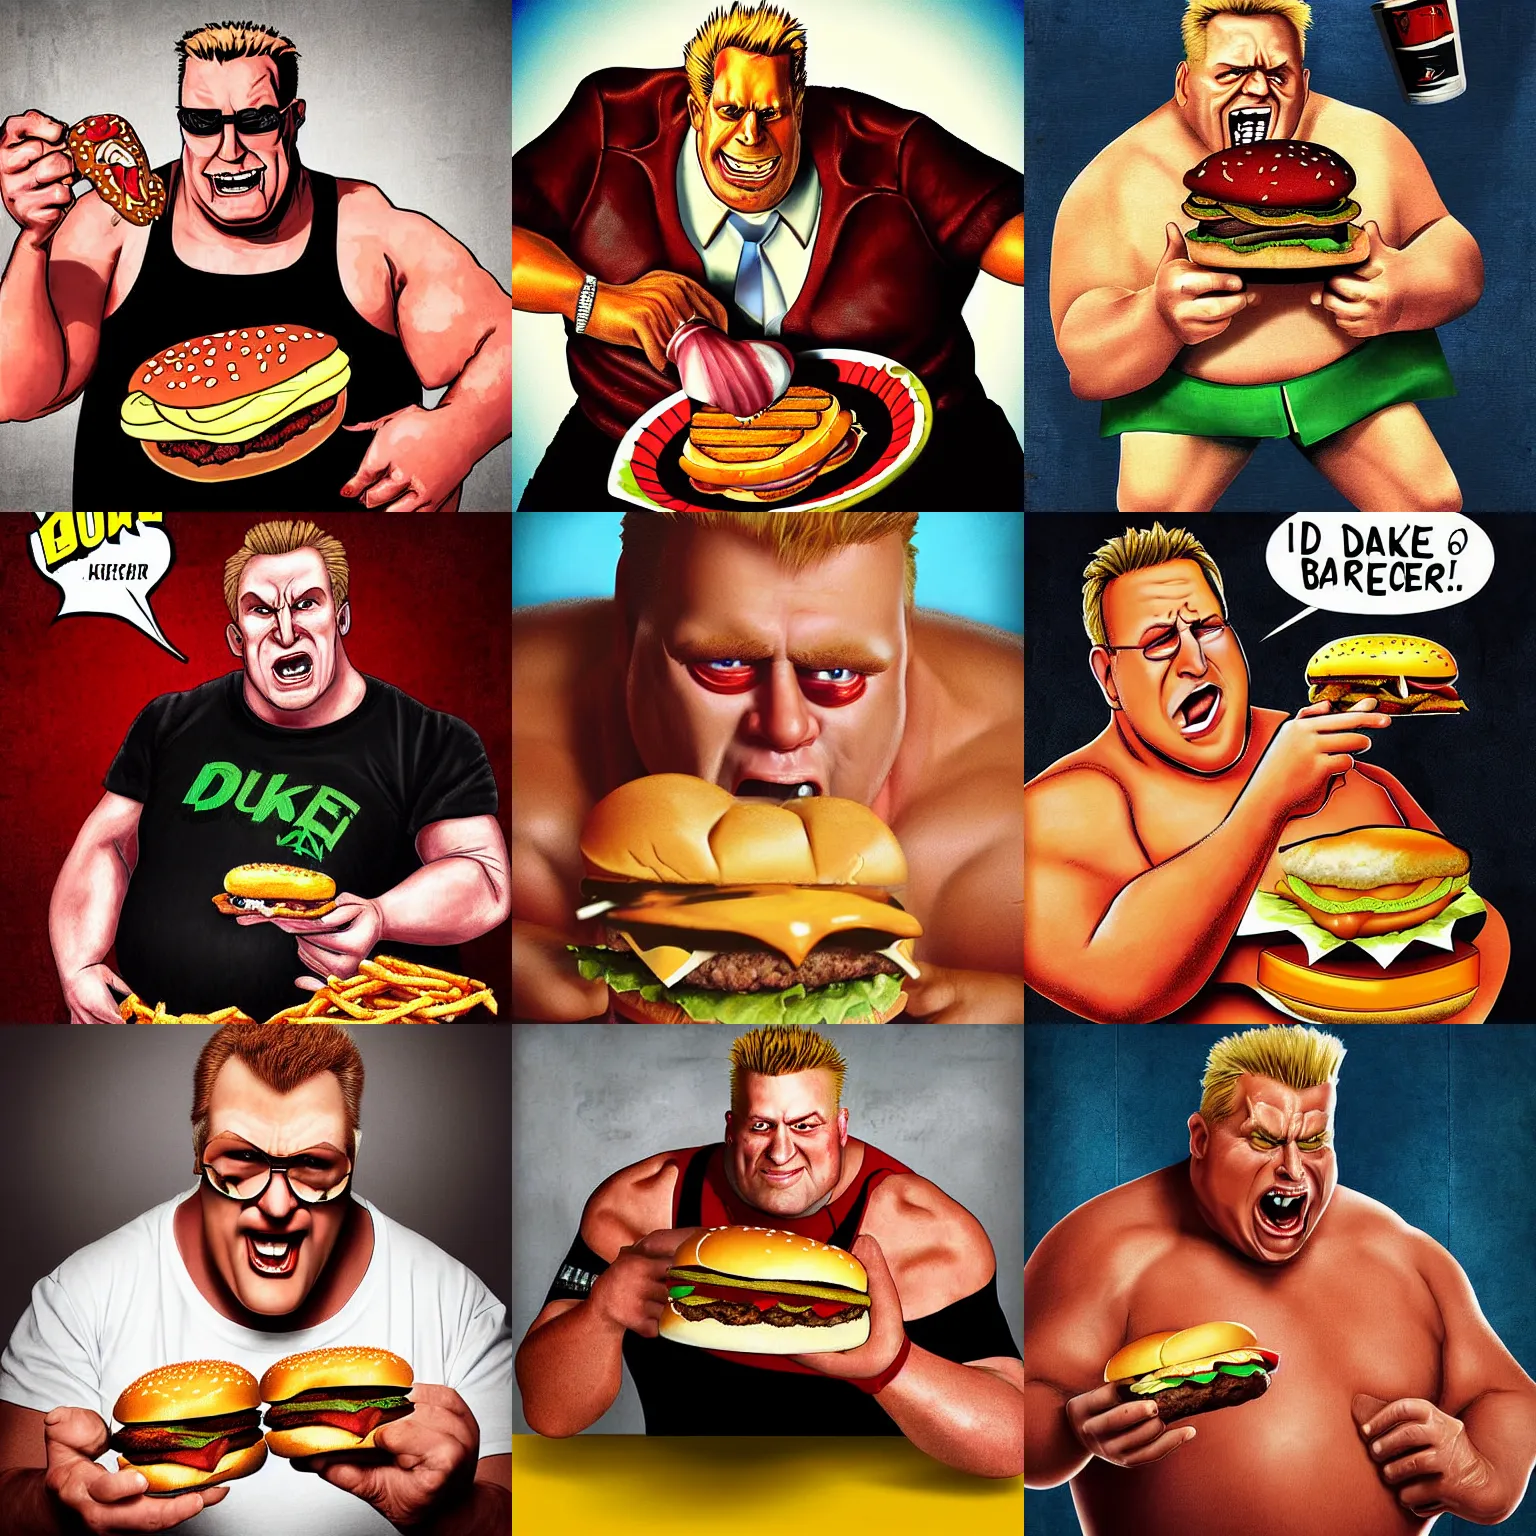 Prompt: portrait photograph, duke nukem as a fat slob eating burgers